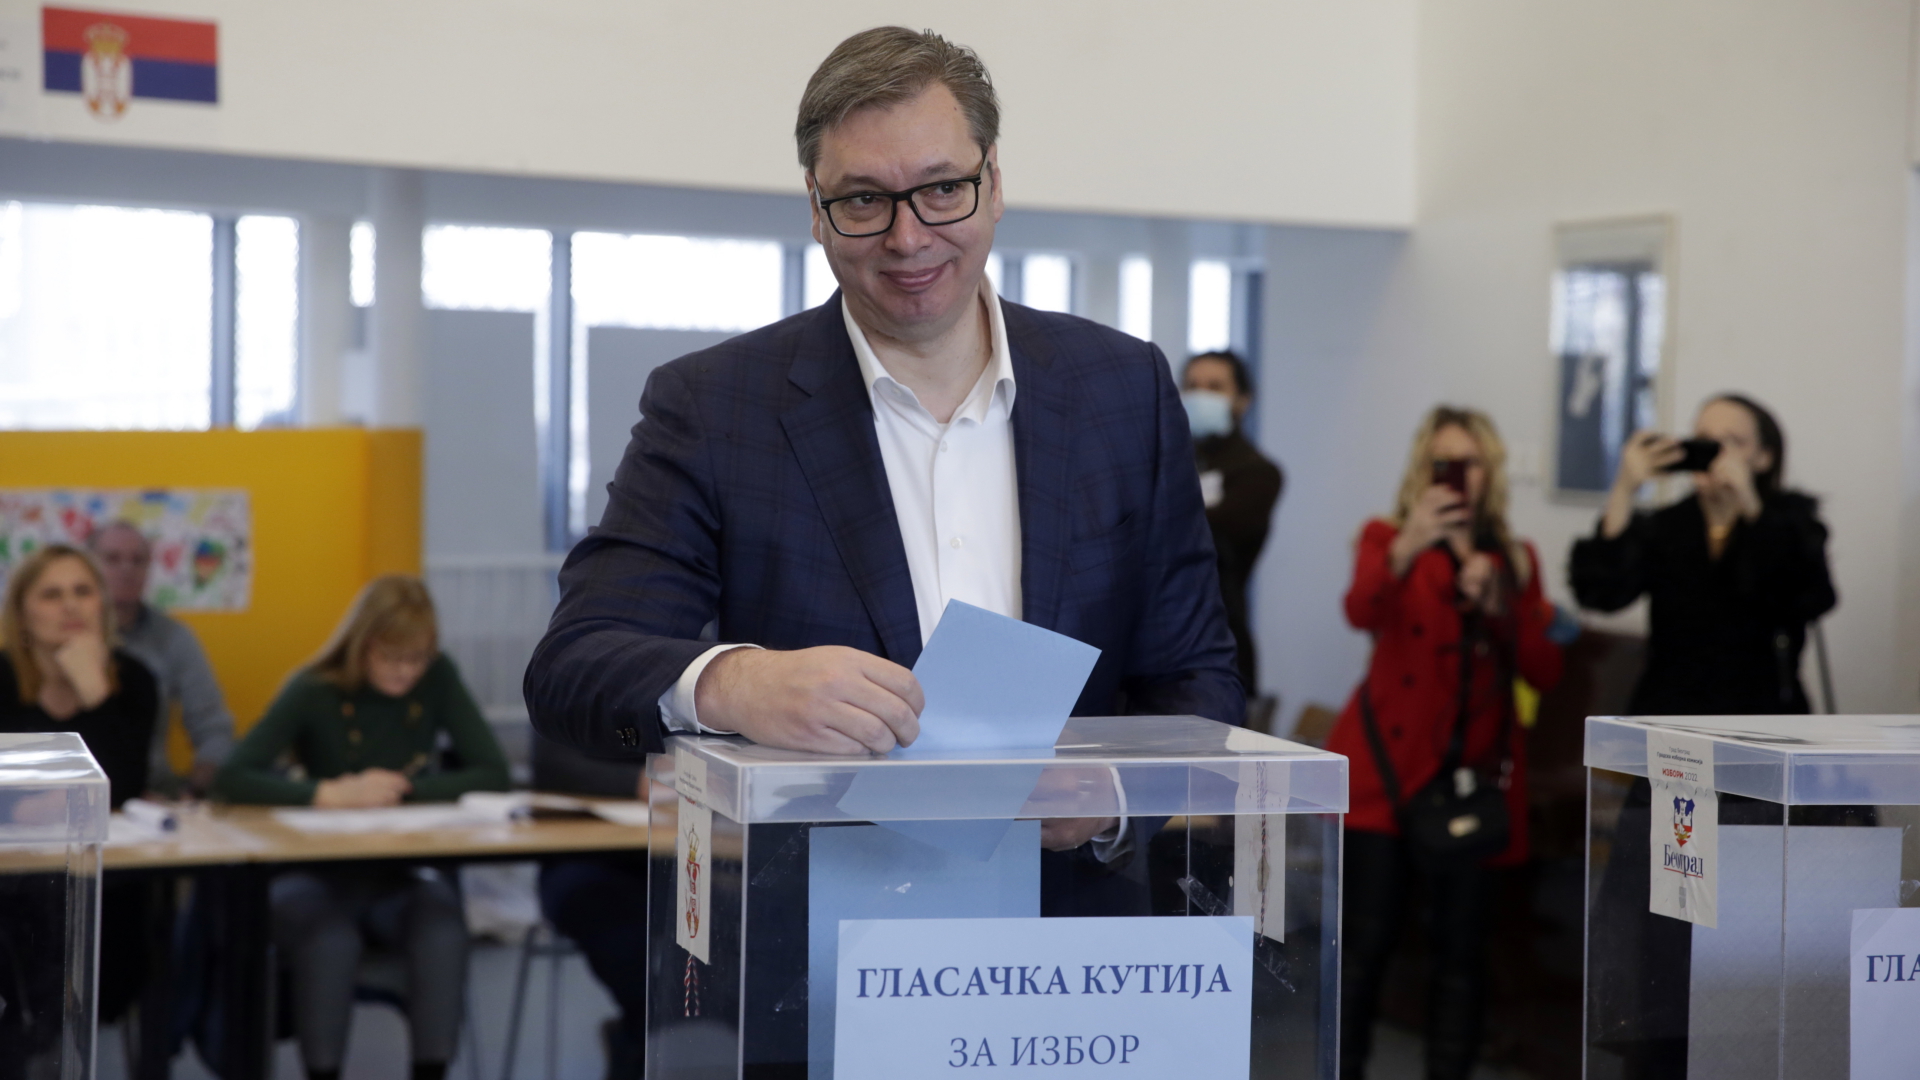 Aleksandar Vucic bei der Stimmabgabe in einem Wahllokal in Belgrad. | EPA